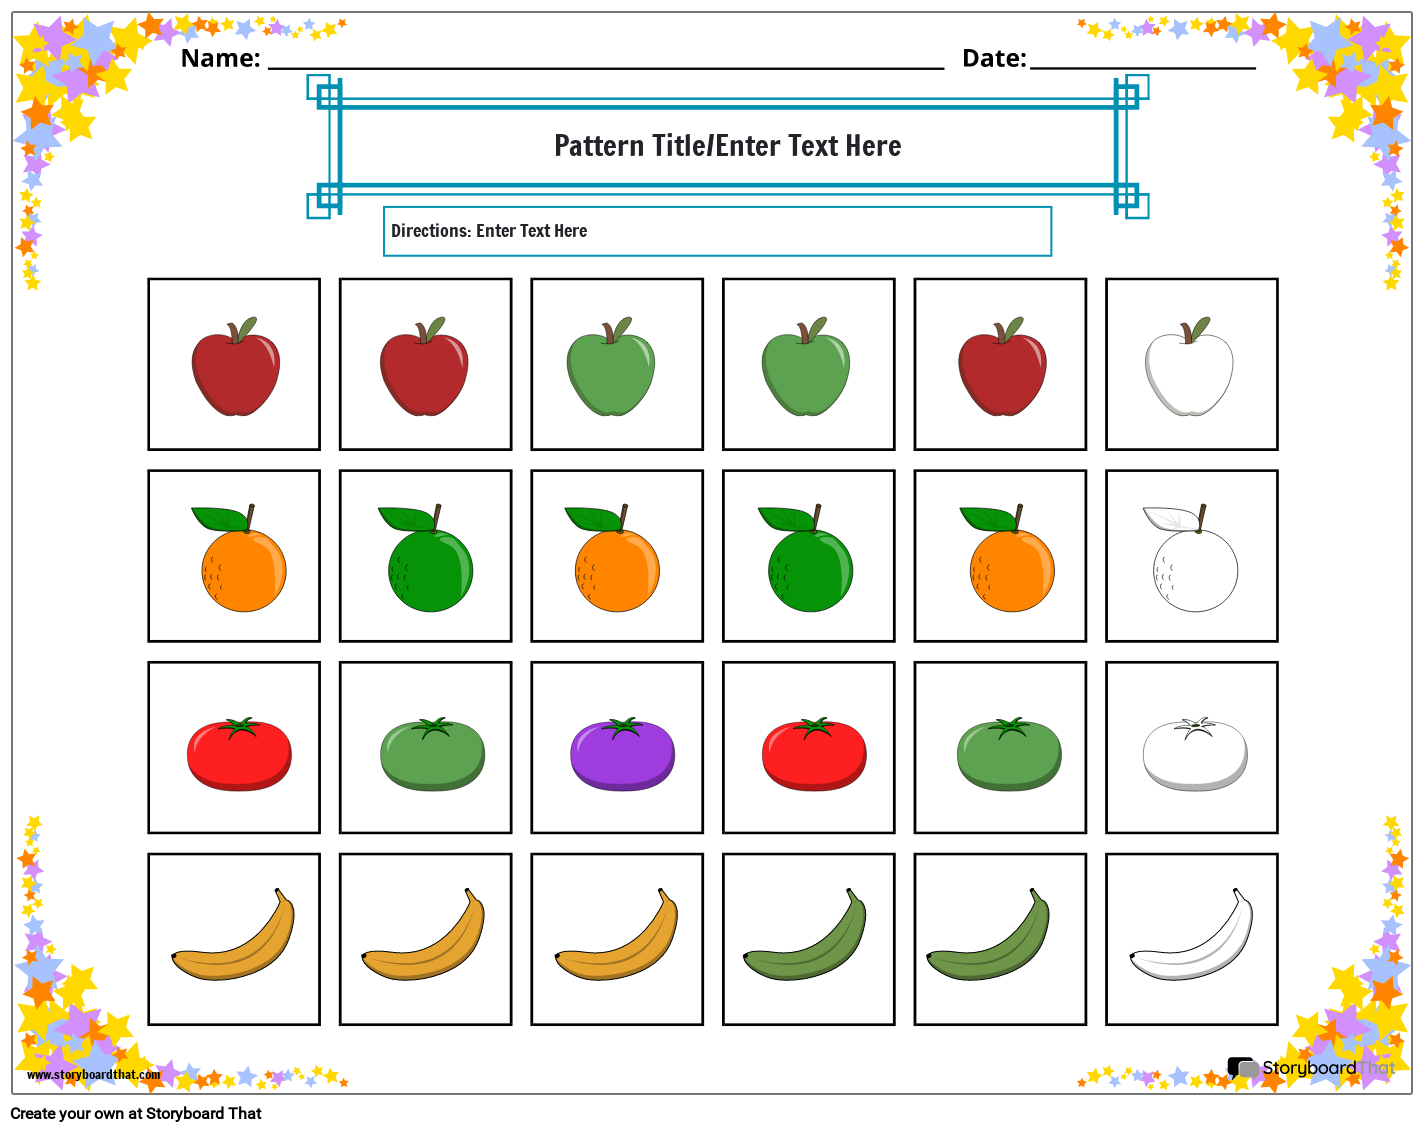 Fruits color Pattern Worksheet